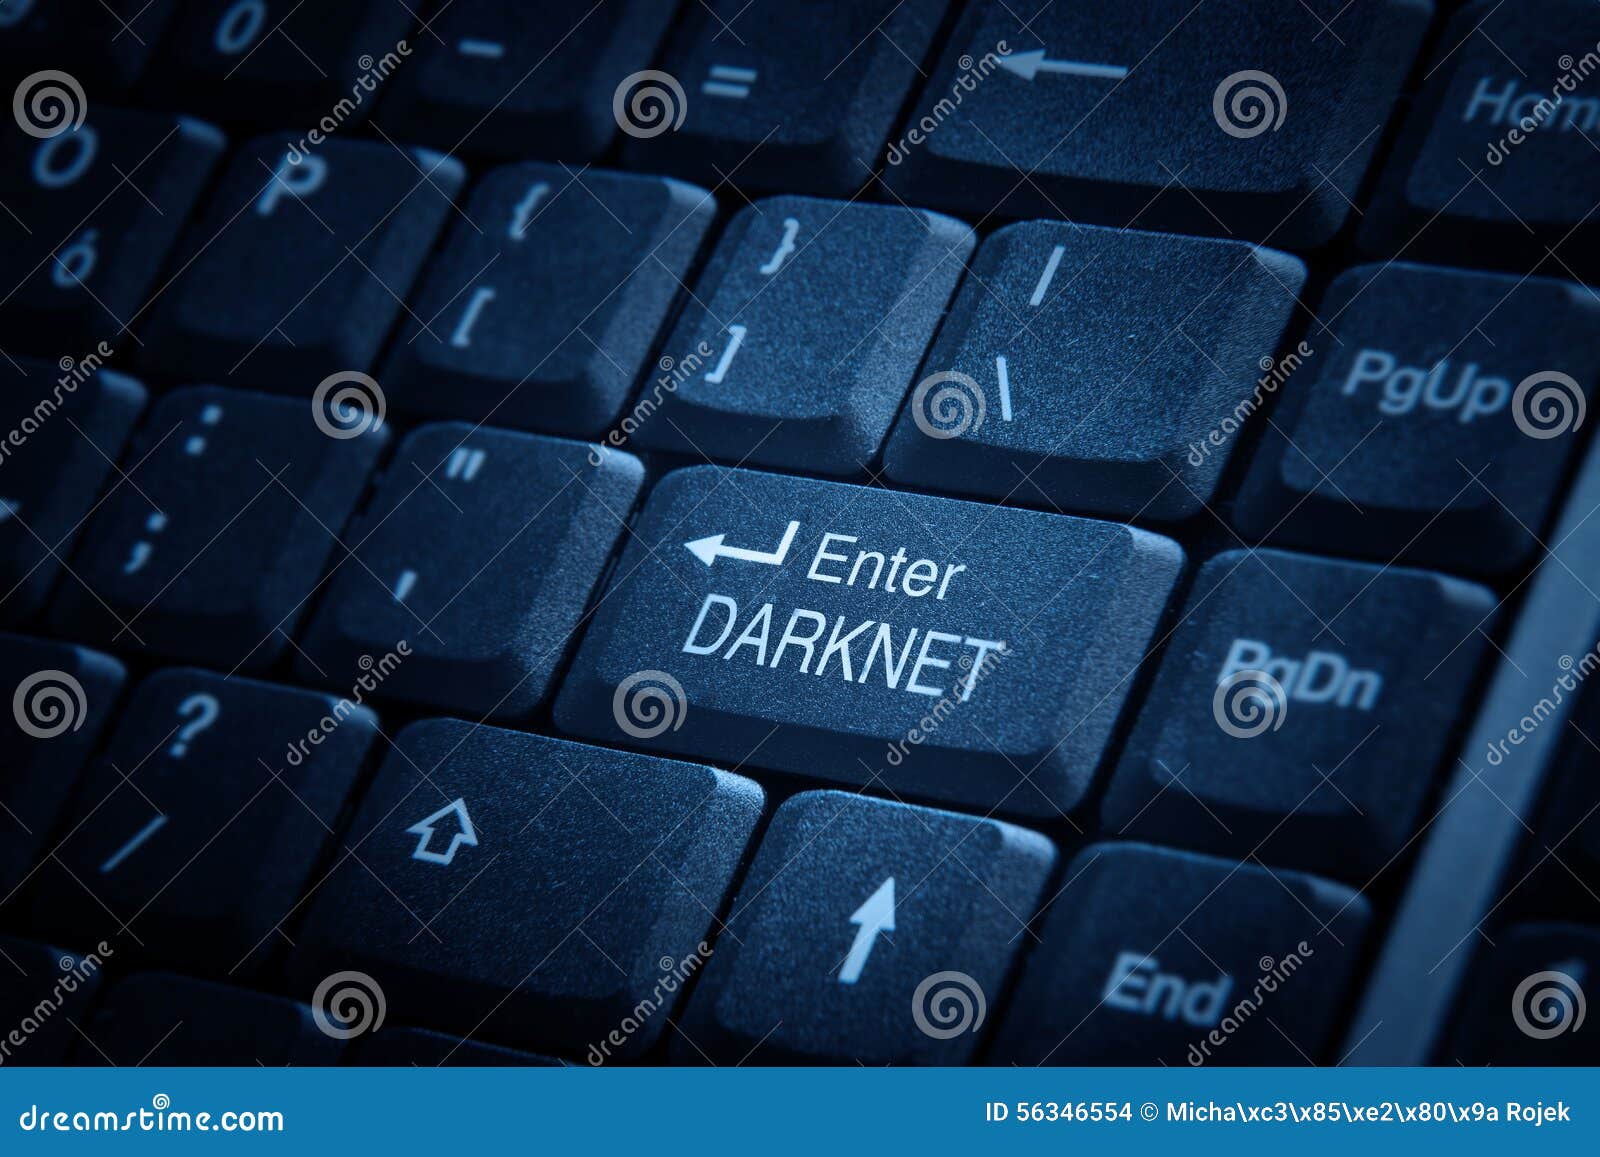 enter to darknet